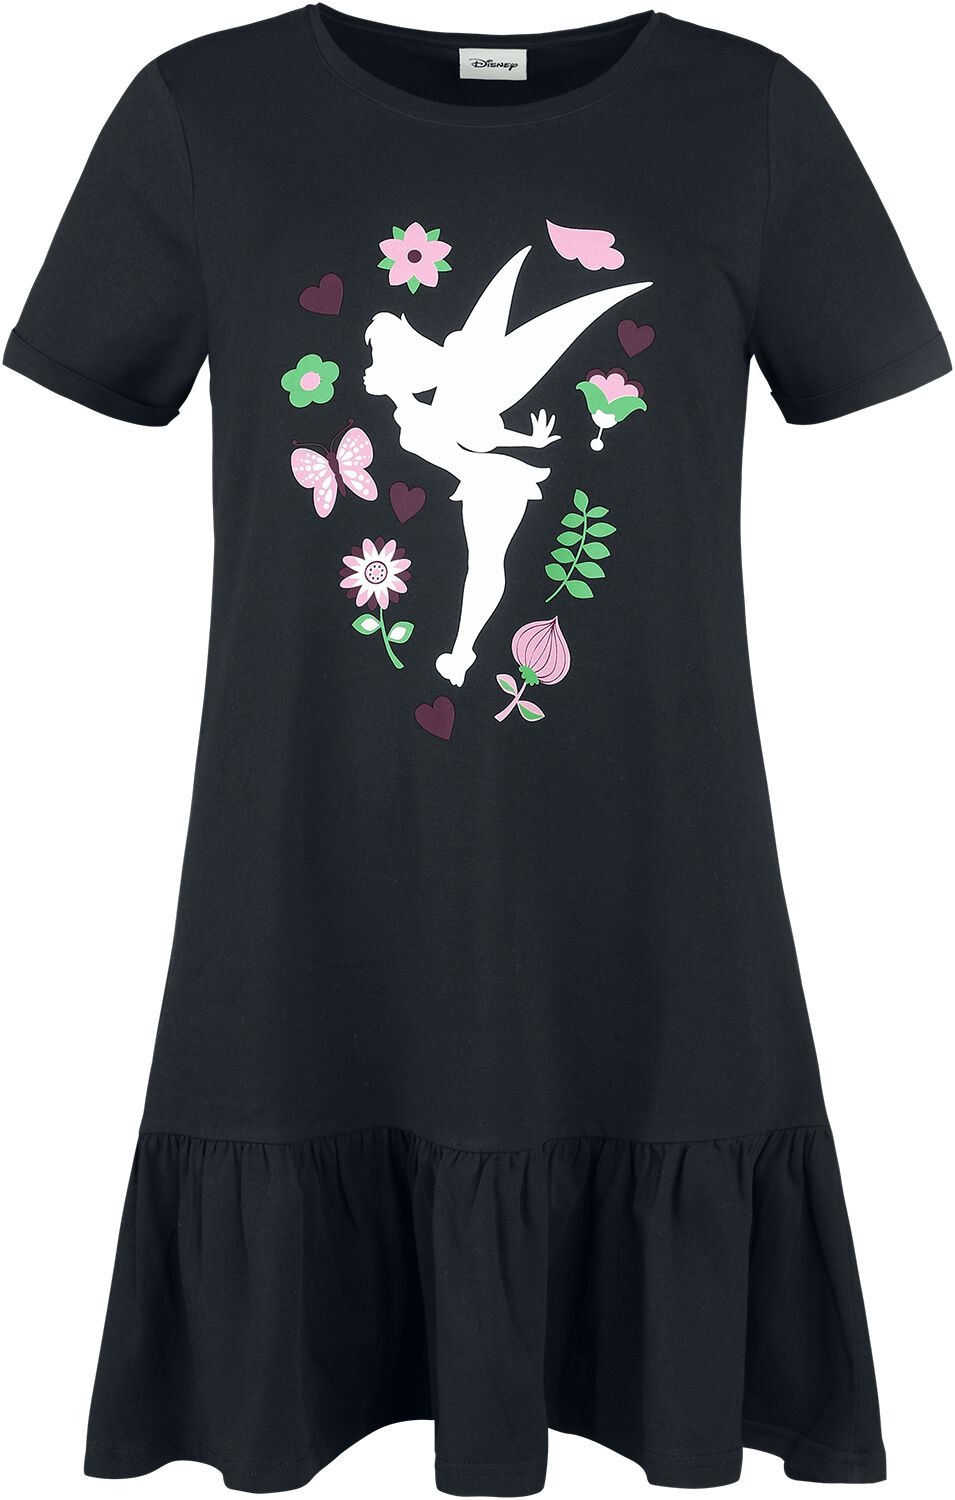 Peter Pan - Disney Kleid lang - Tinker Bell - Flower - S bis L - für Damen - Größe M - schwarz  - EMP exklusives Merchandise!